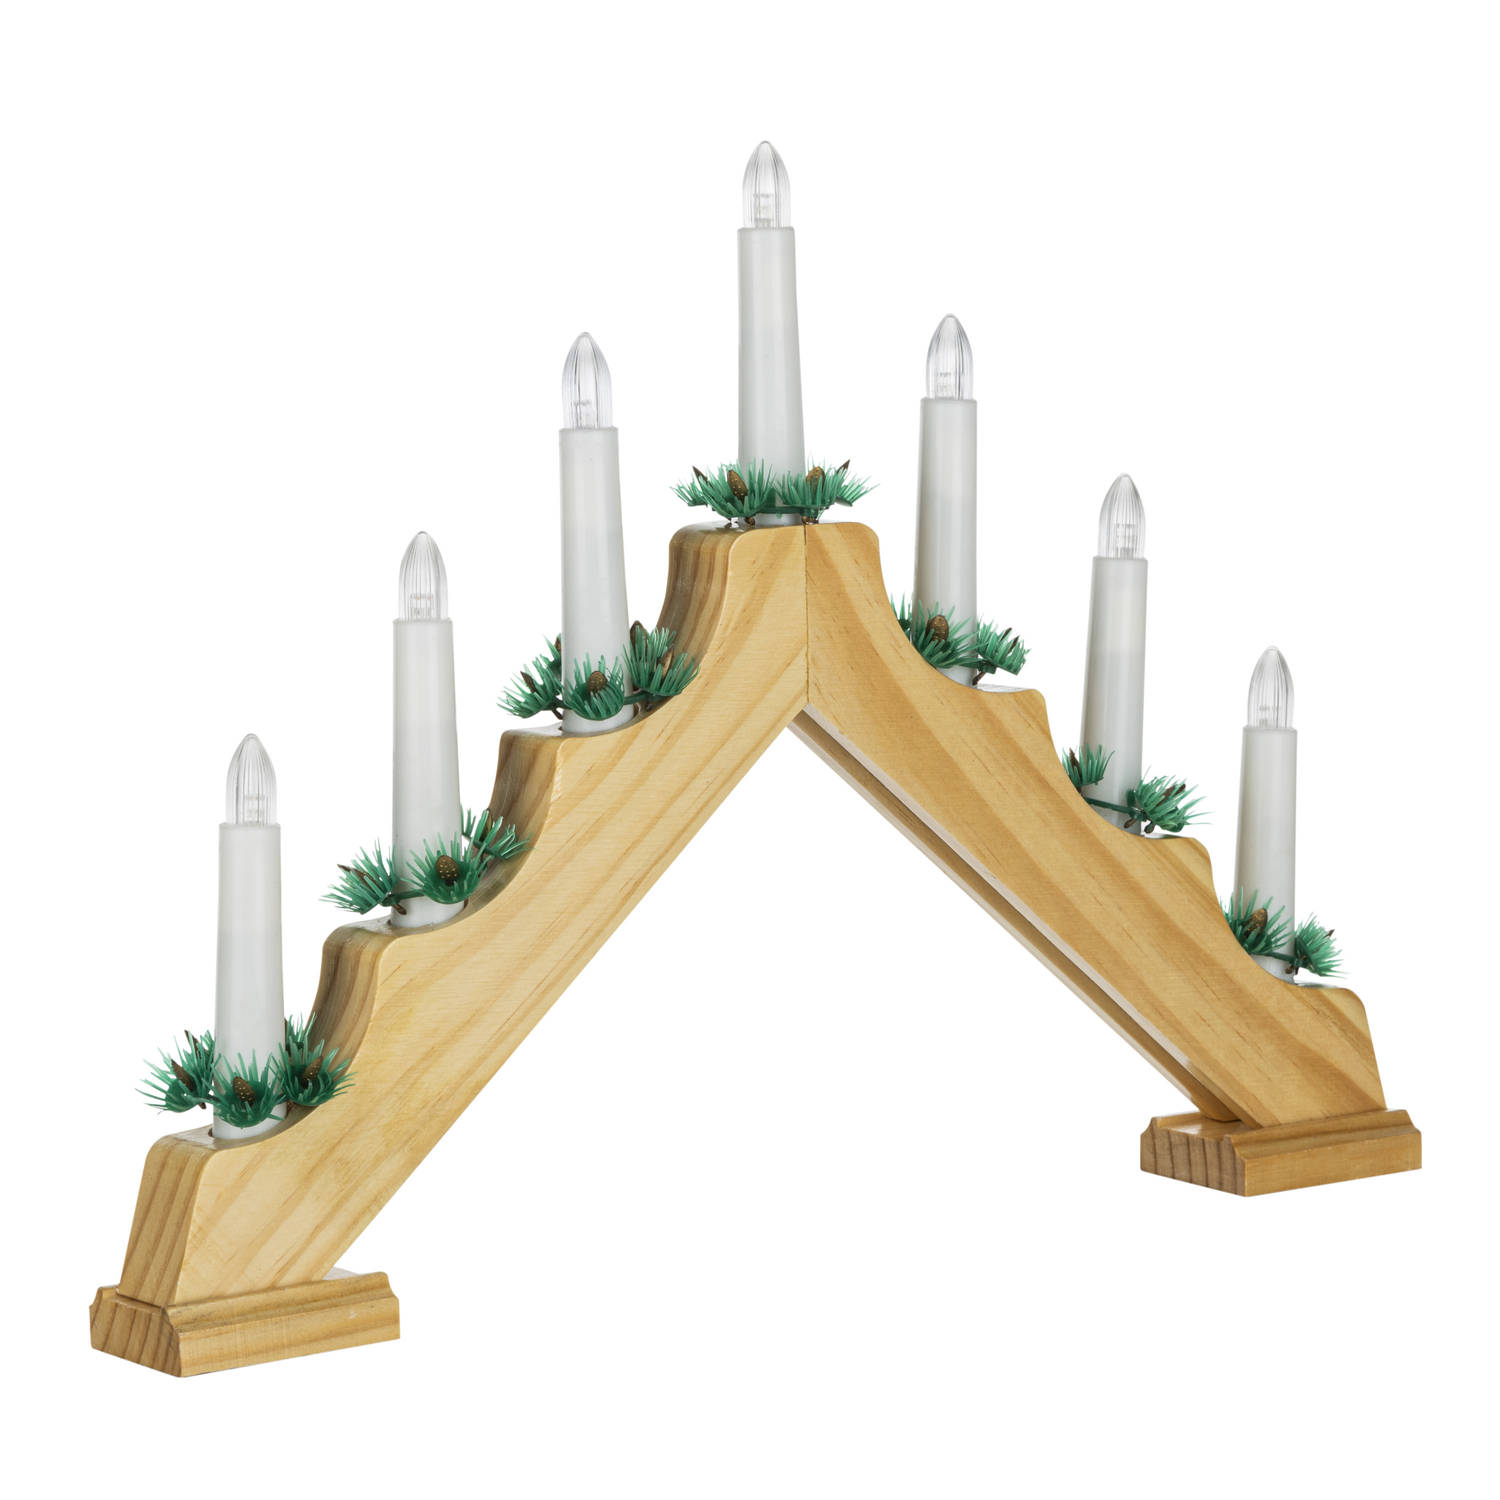 HI kaarsenbrug - hout - 42,5 x 4,5 x 32 cm -met LED kaarsen - kerstverlichting figuur